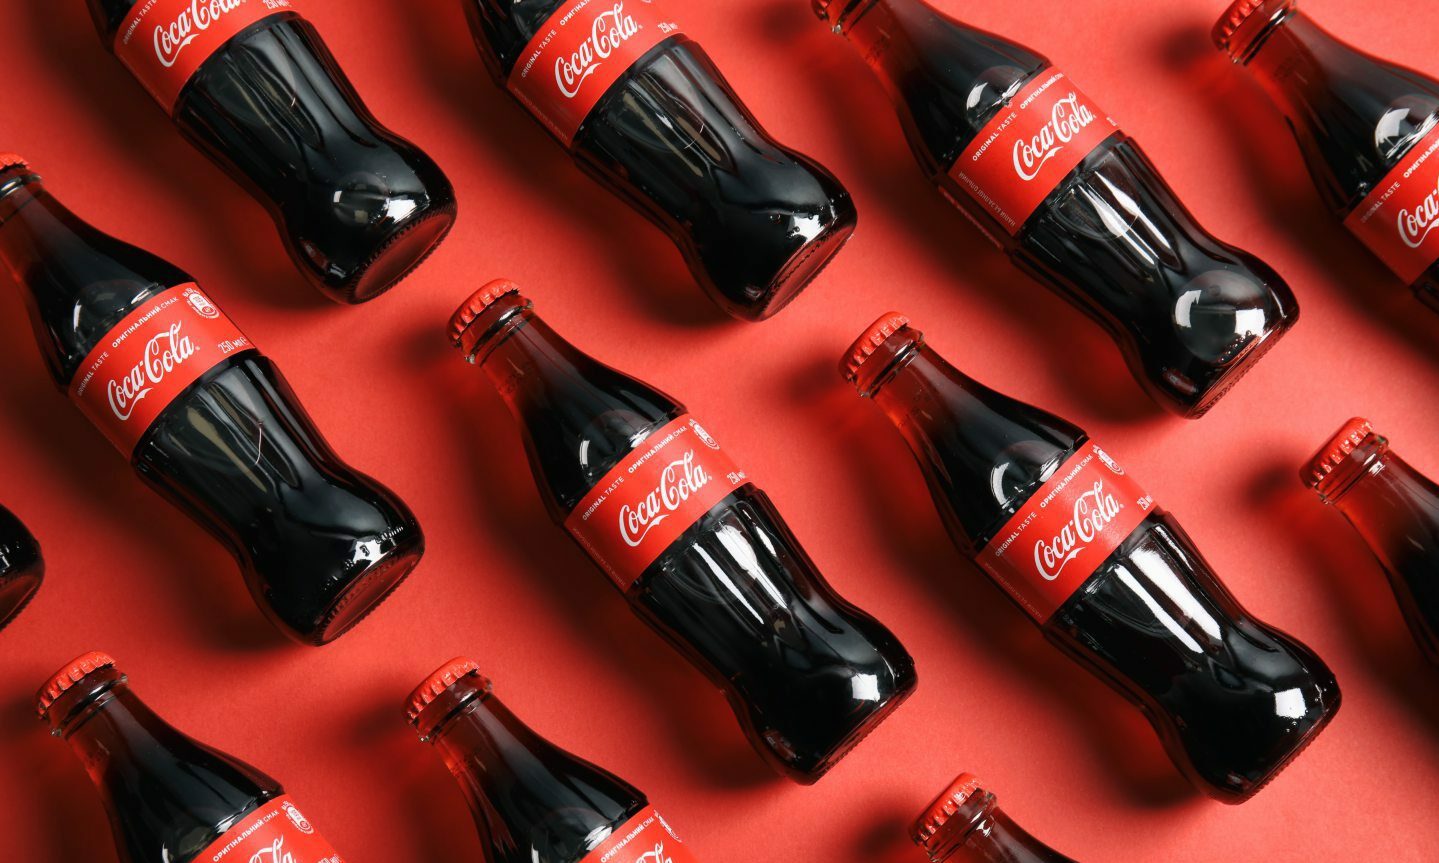 Coca-cola is the preferred brand.